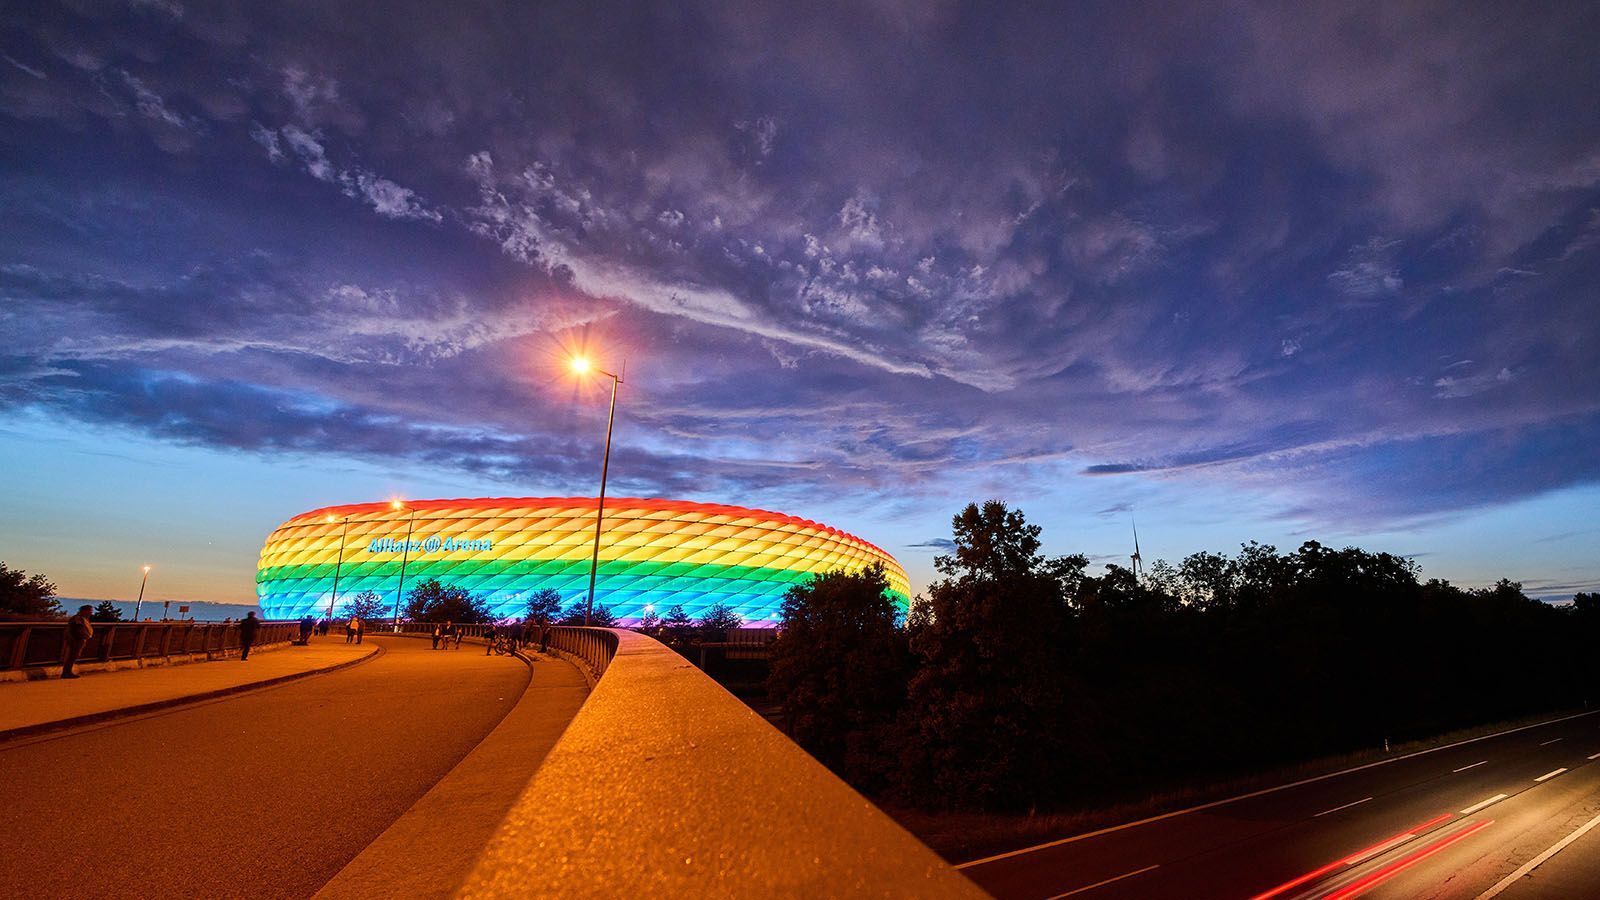 
                <strong>München: Stadion </strong><br>
                Die Allianz Arena wurde vor der WM 2006 erbaut und bietet 75.024 Plätze. Ihr Bau kostete 340 Millionen Euro. Im Stadion werden ausschließlich die Heimspiele des FC Bayern München ausgetragen, dem das Stadion auch gehört. Die Arena kann das Spielfeld nicht überdachen und hat ein Spielfeld in der Größe von 105m x 68m. Die Esplanade vor der Arena bietet ebenfalls genügend Platz, um zusätzliche Aufbauten realisieren zu können.
              